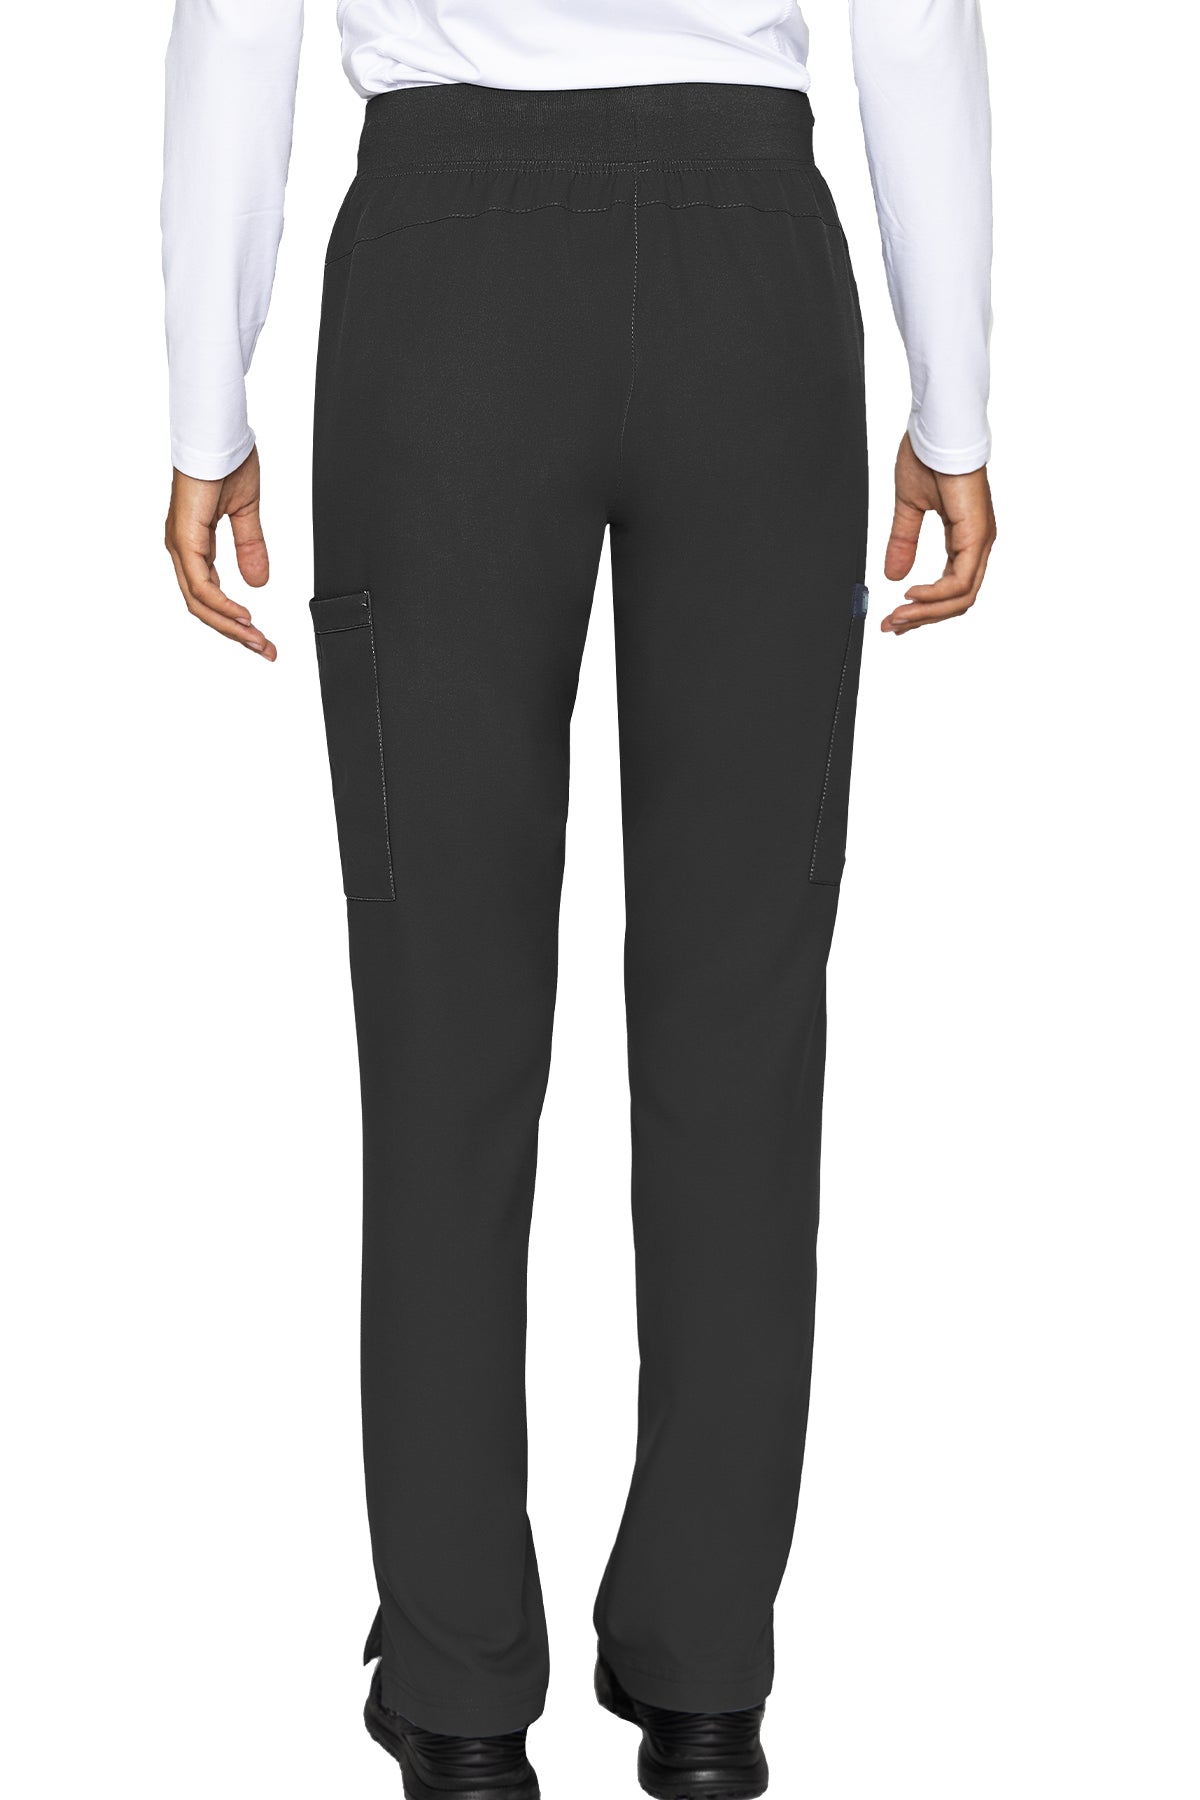 Zipper Pant Lightweight by Med Couture (Regular) XS-5XL / Black